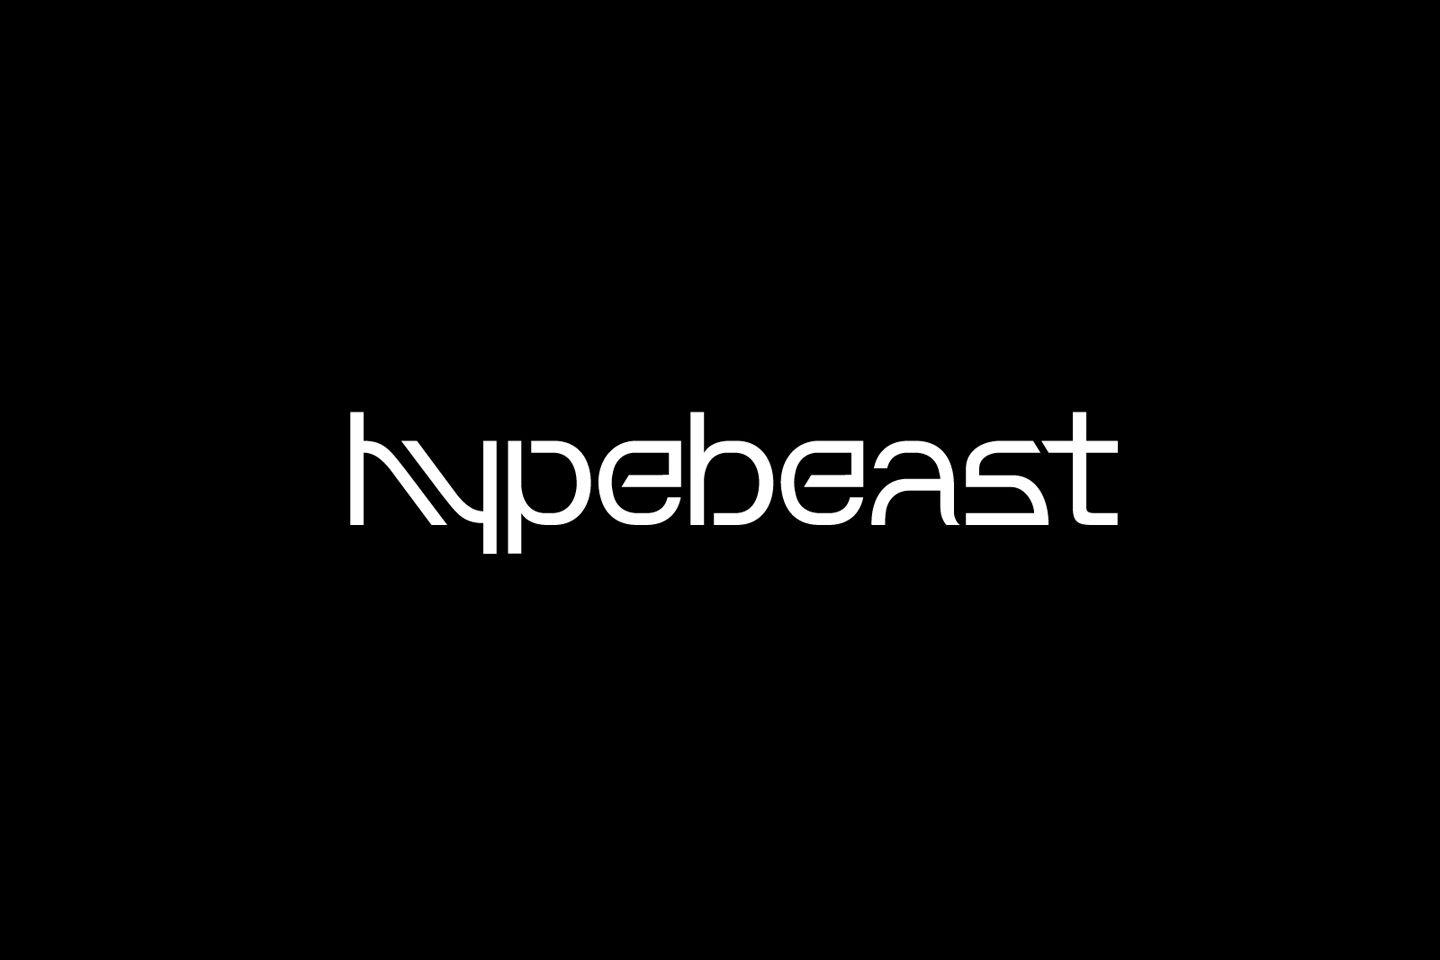 Hypbeast Logo - Hypebeast Logos